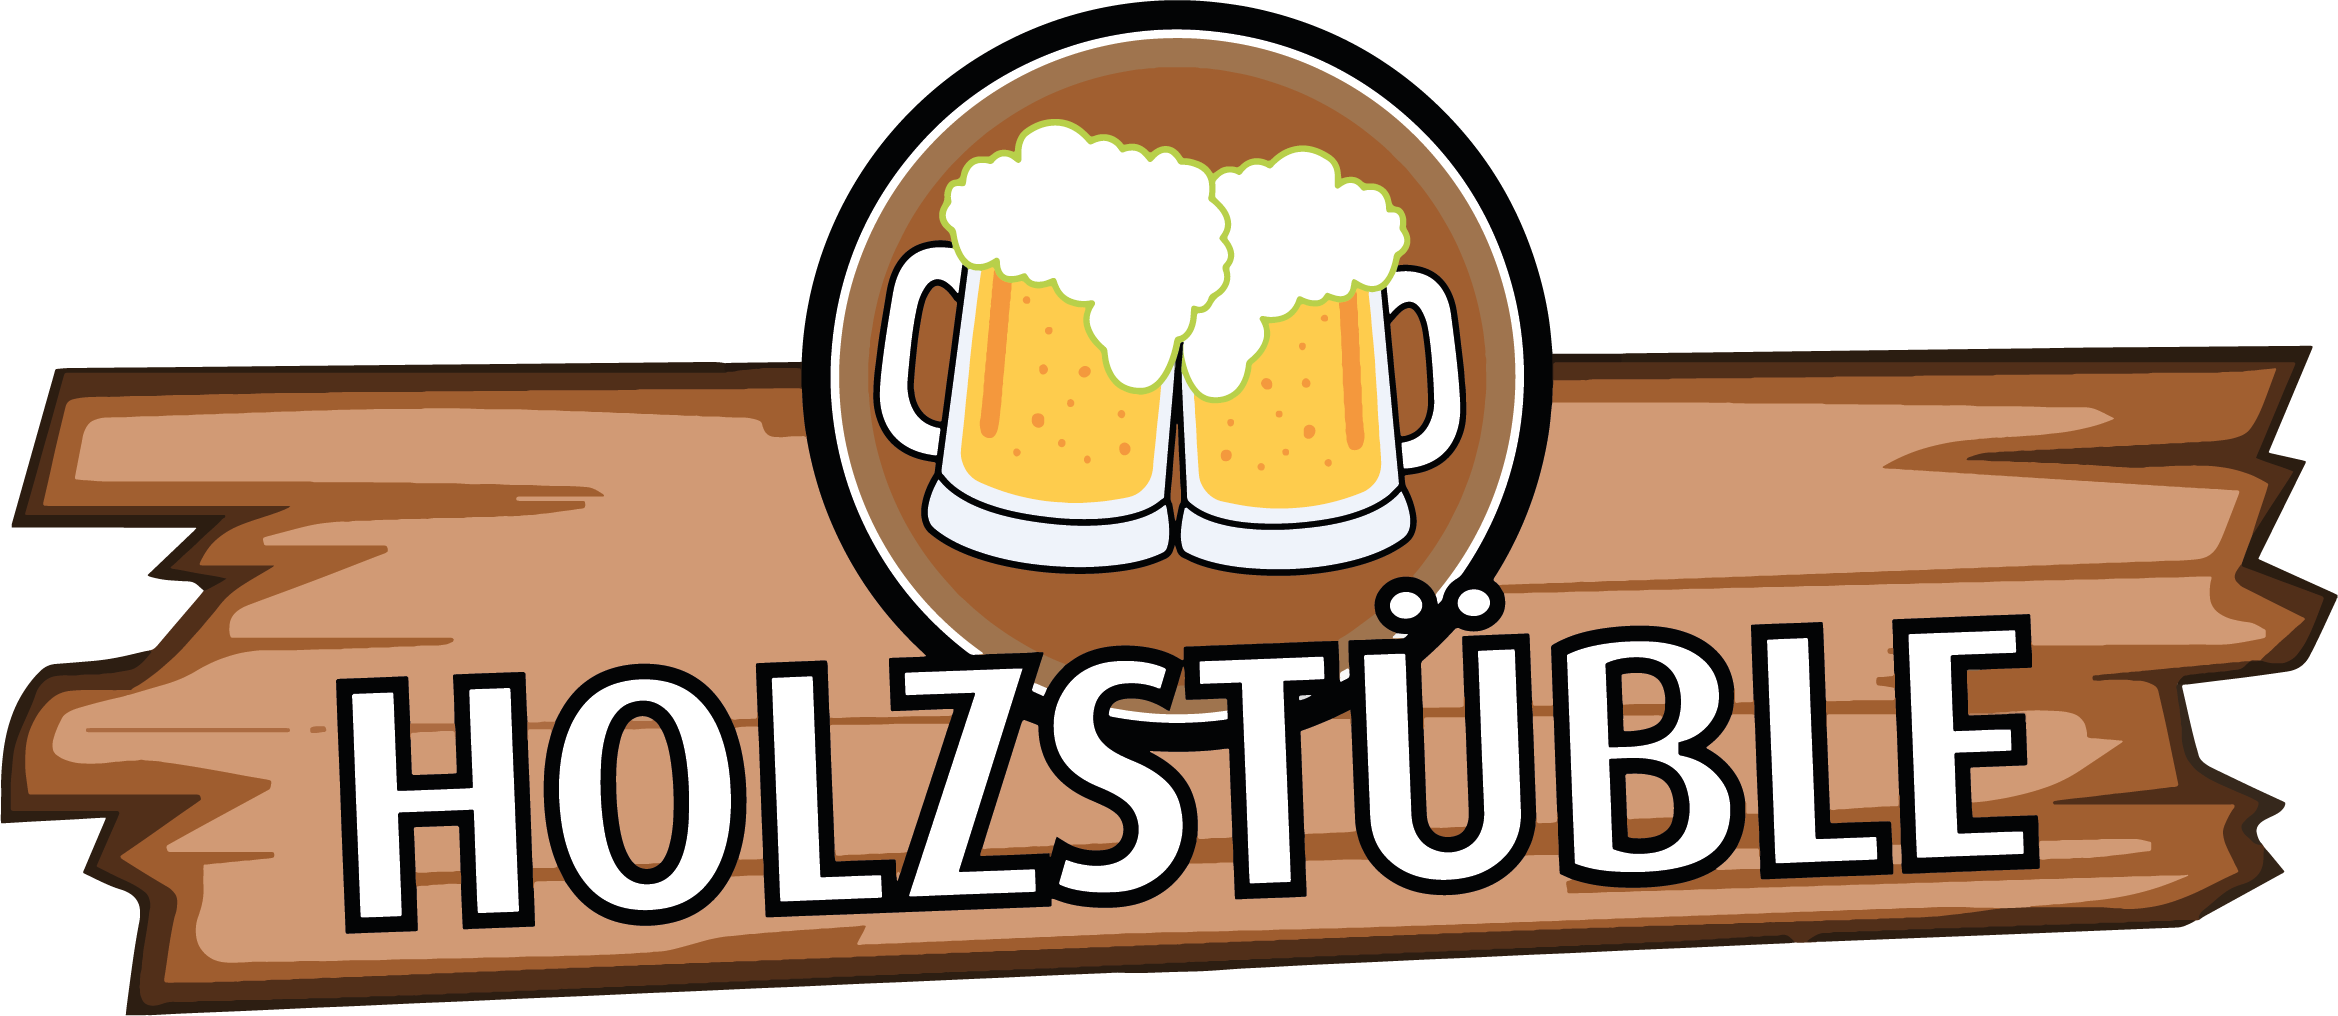 holzstueble_logo